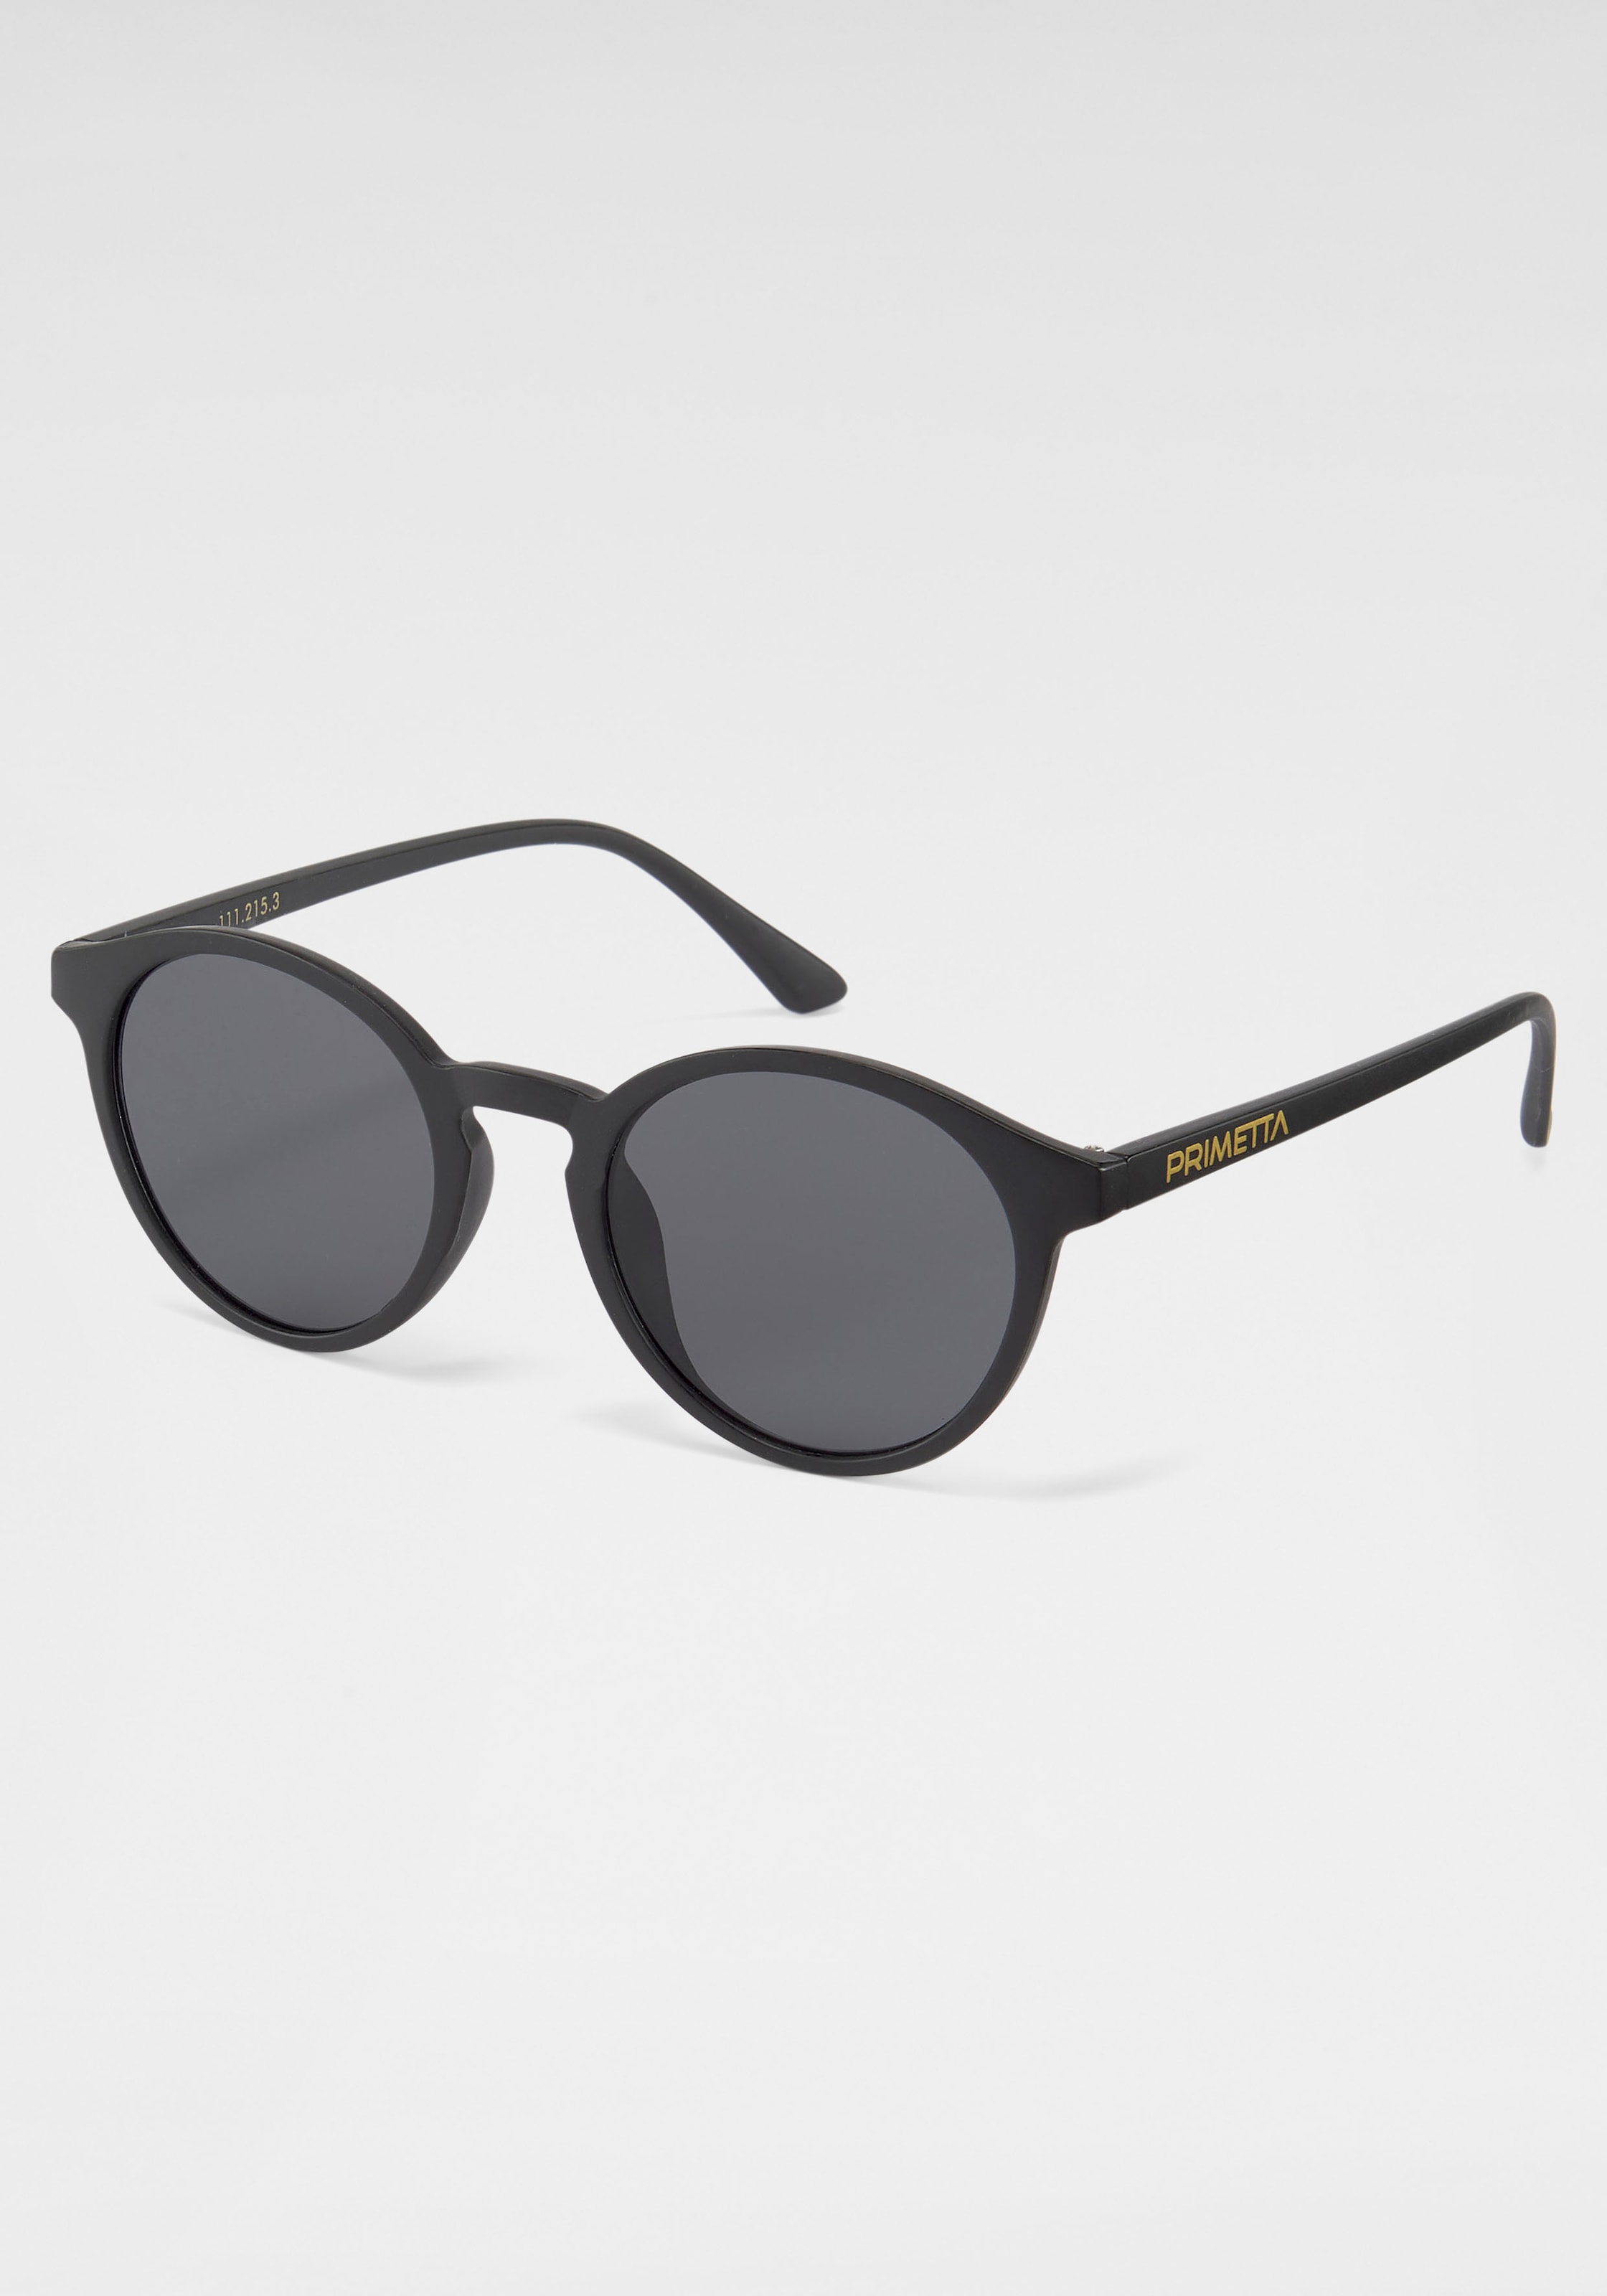 PRIMETTA Eyewear Online Sonnenbrille Shop im OTTO